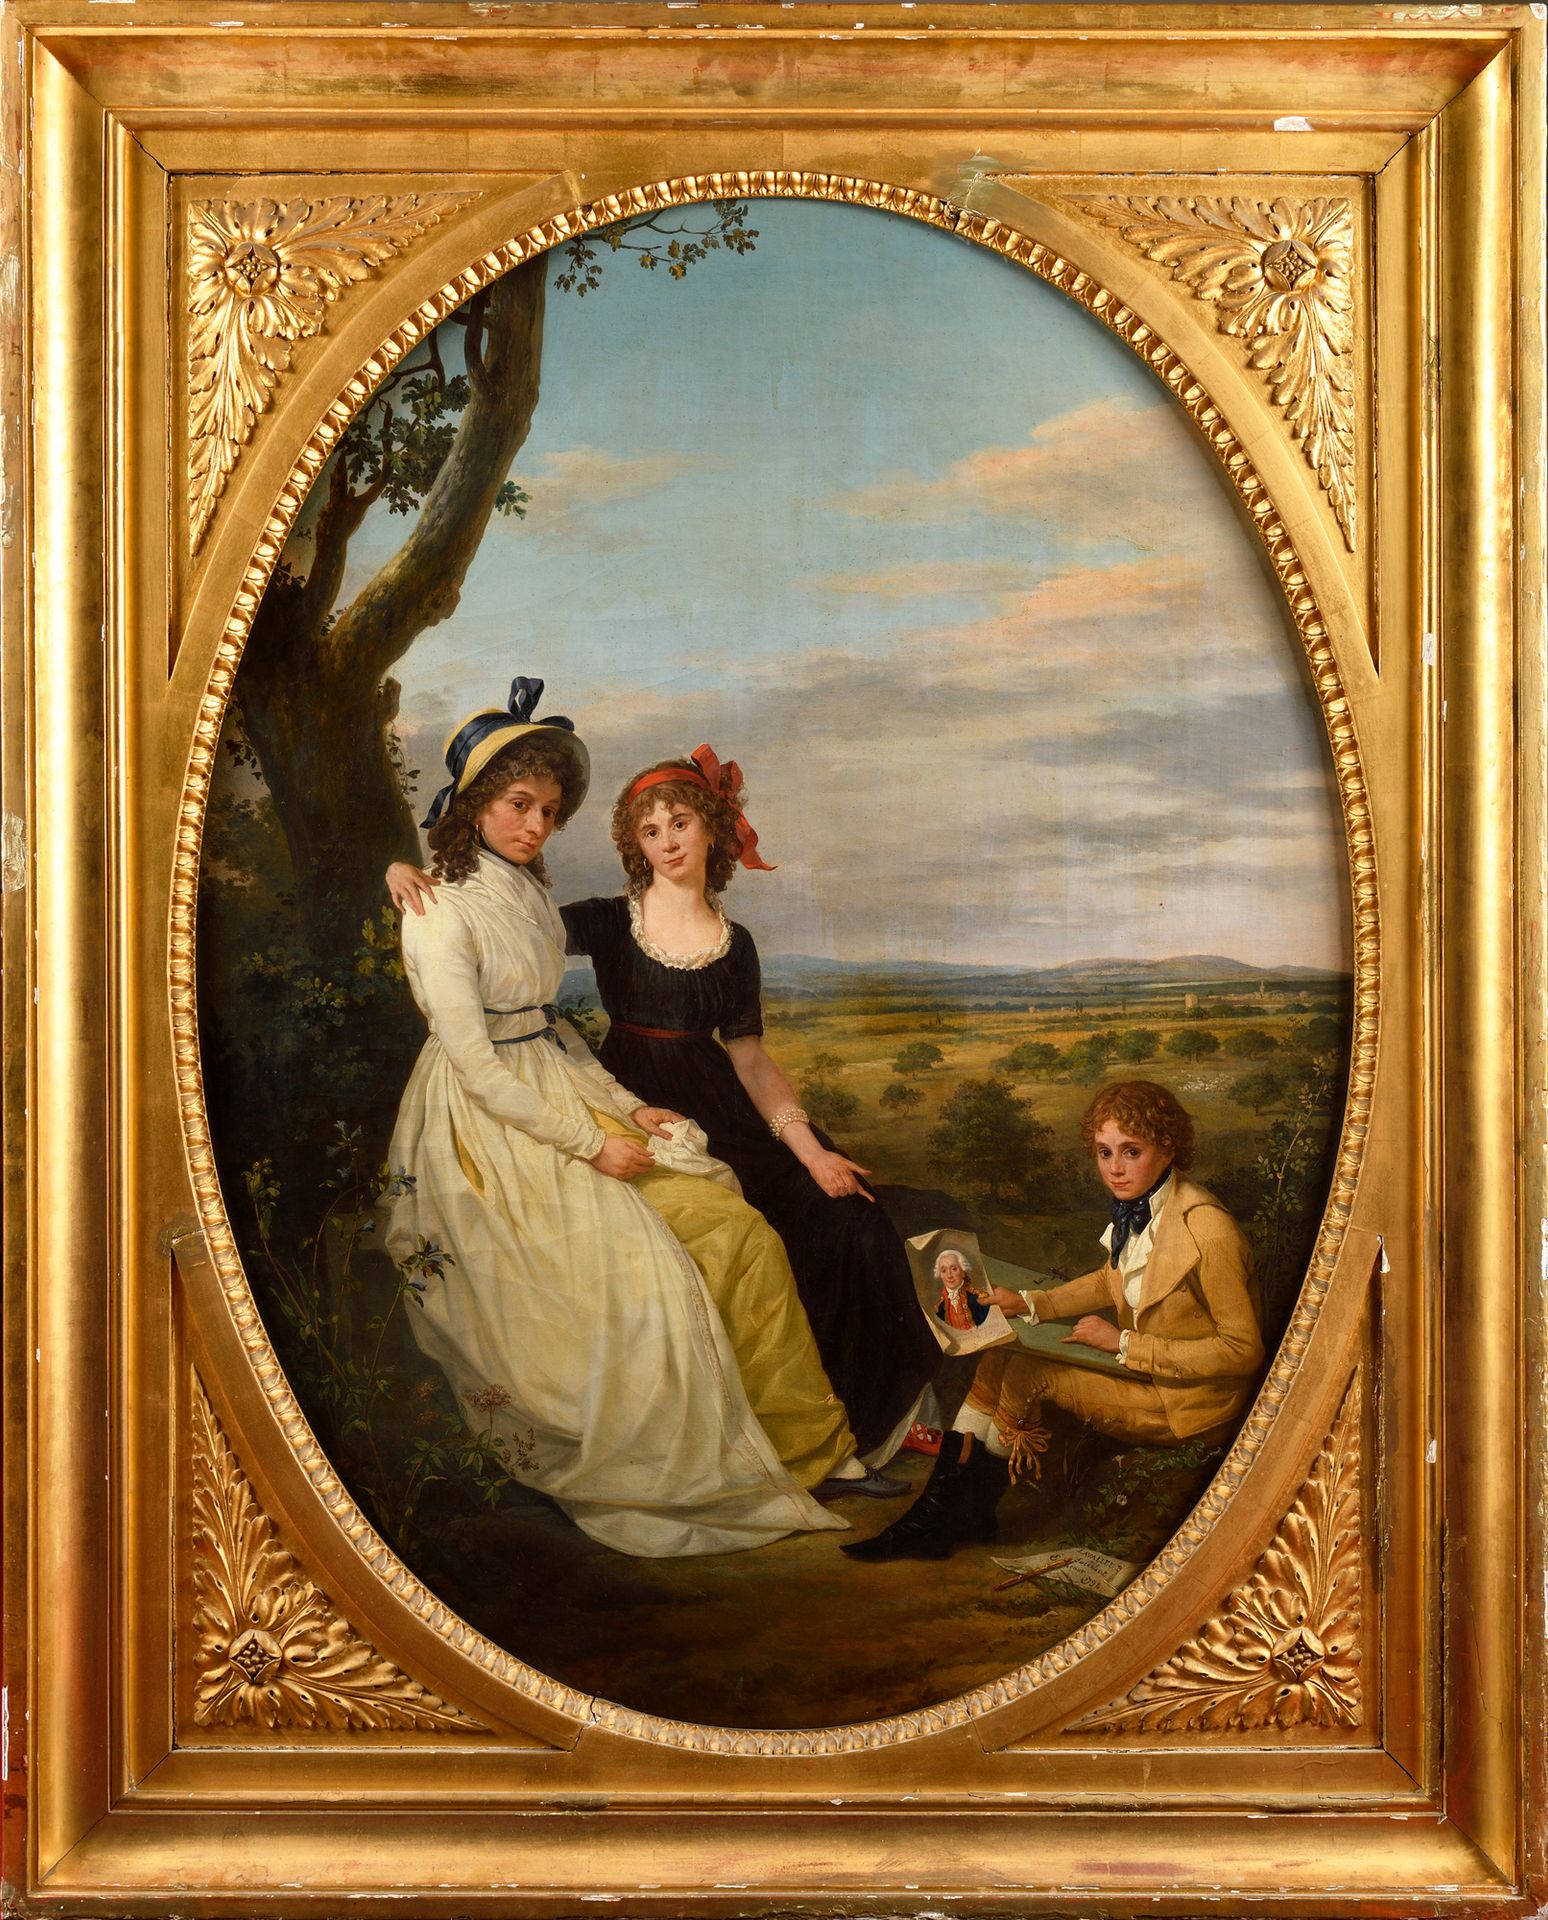 Null 埃蒂安-德-拉瓦勒-普桑（Rouen 1735 - Paris 1802)

"Eeremans de Beaufort家族的画像

帆布上有椭圆形视&hellip;